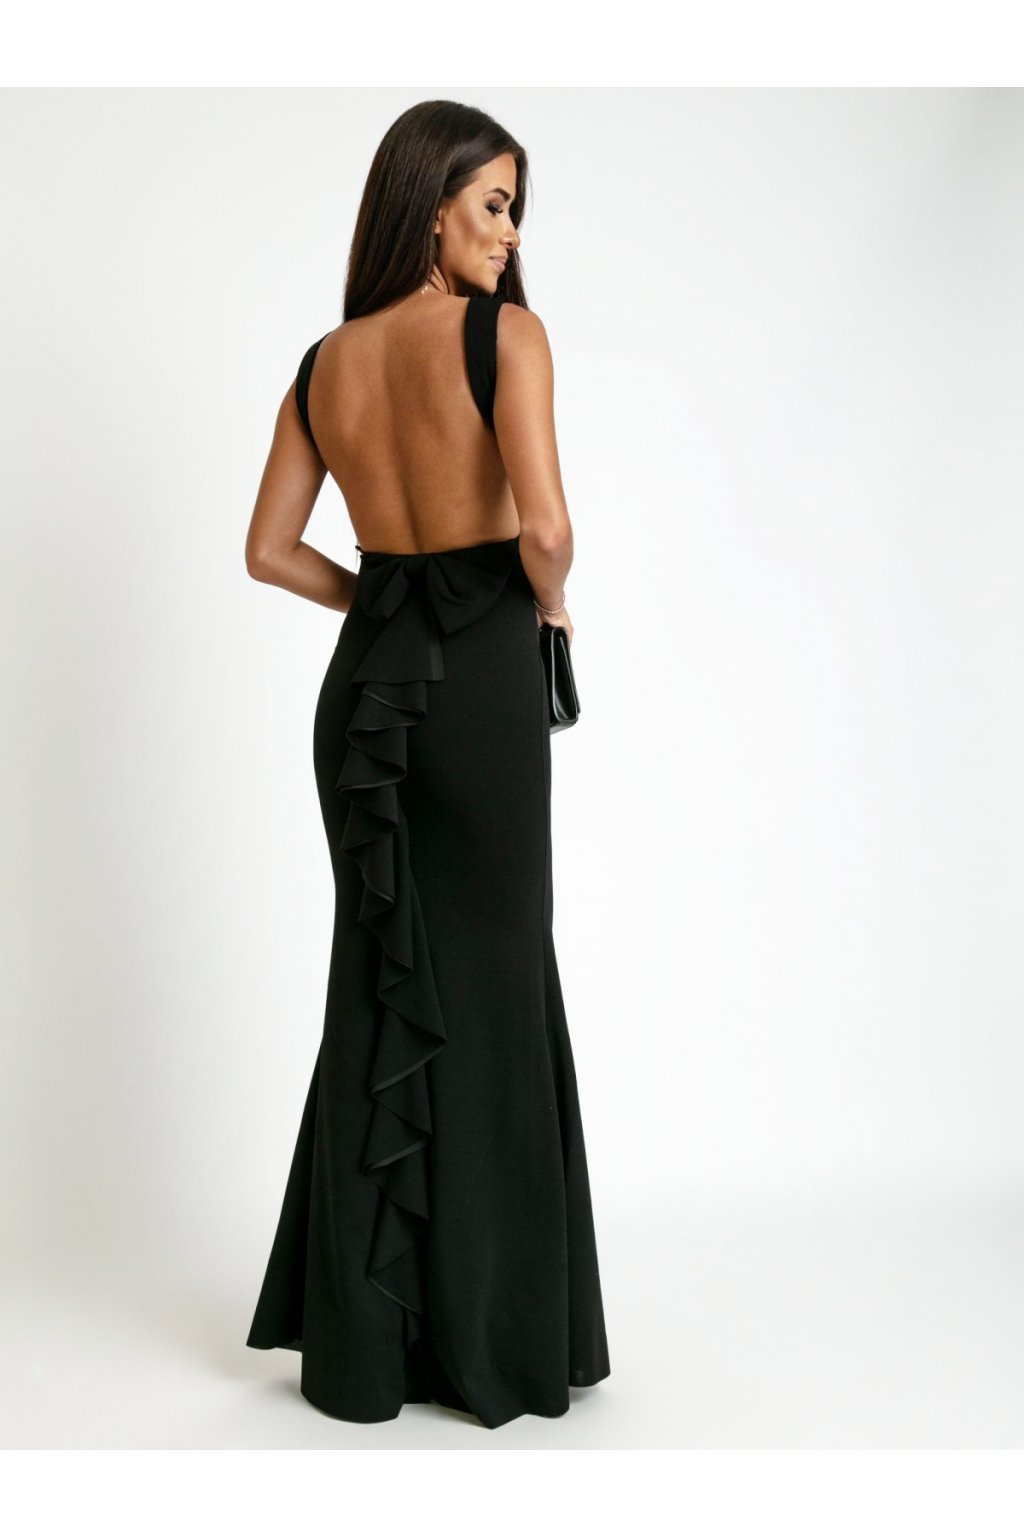 Dlouhé šaty s odhalenými zády Karen černé - MOLLY fashion